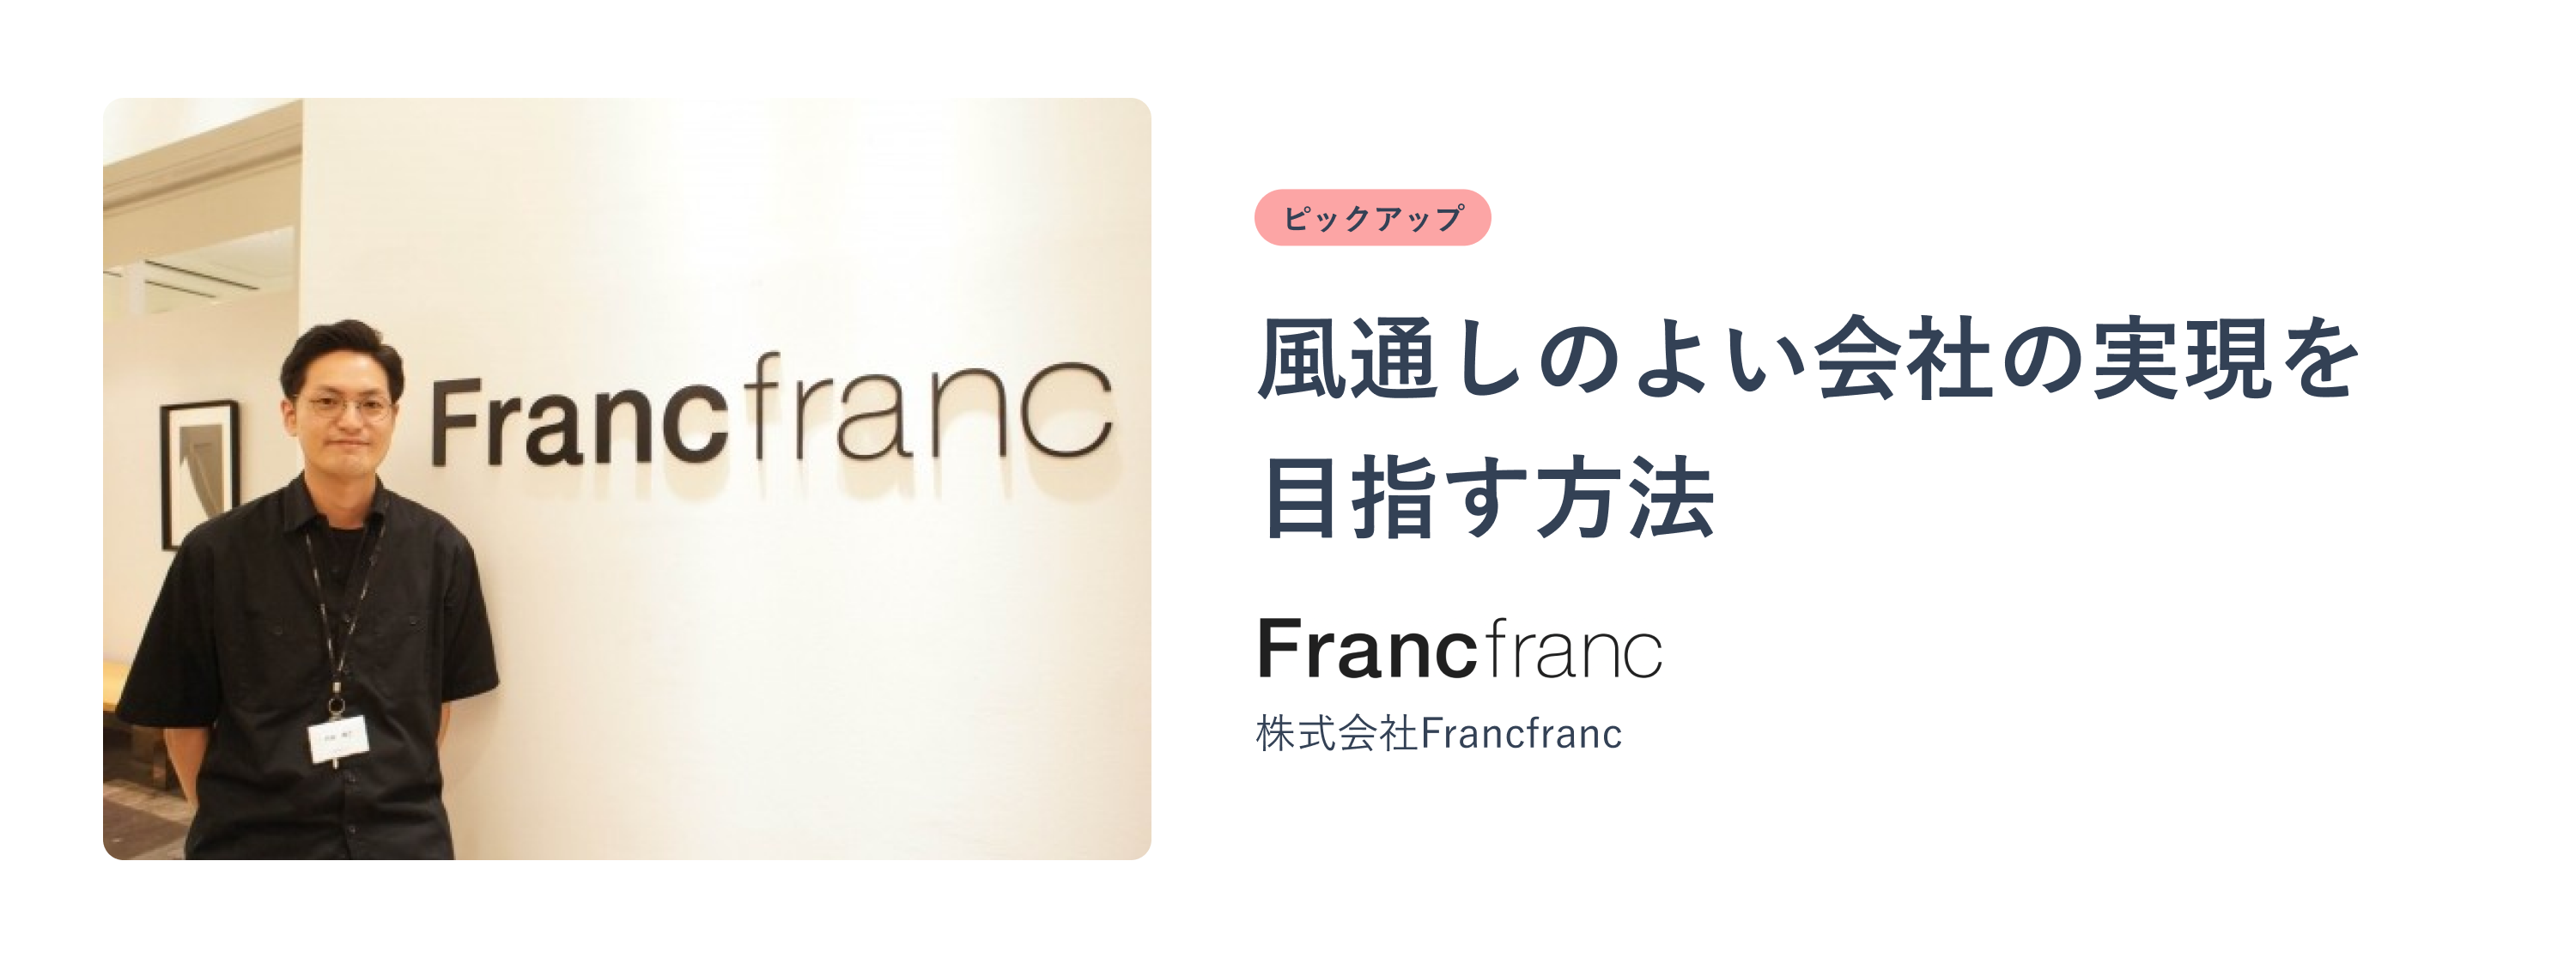 FrancfrancのTUNAG活用